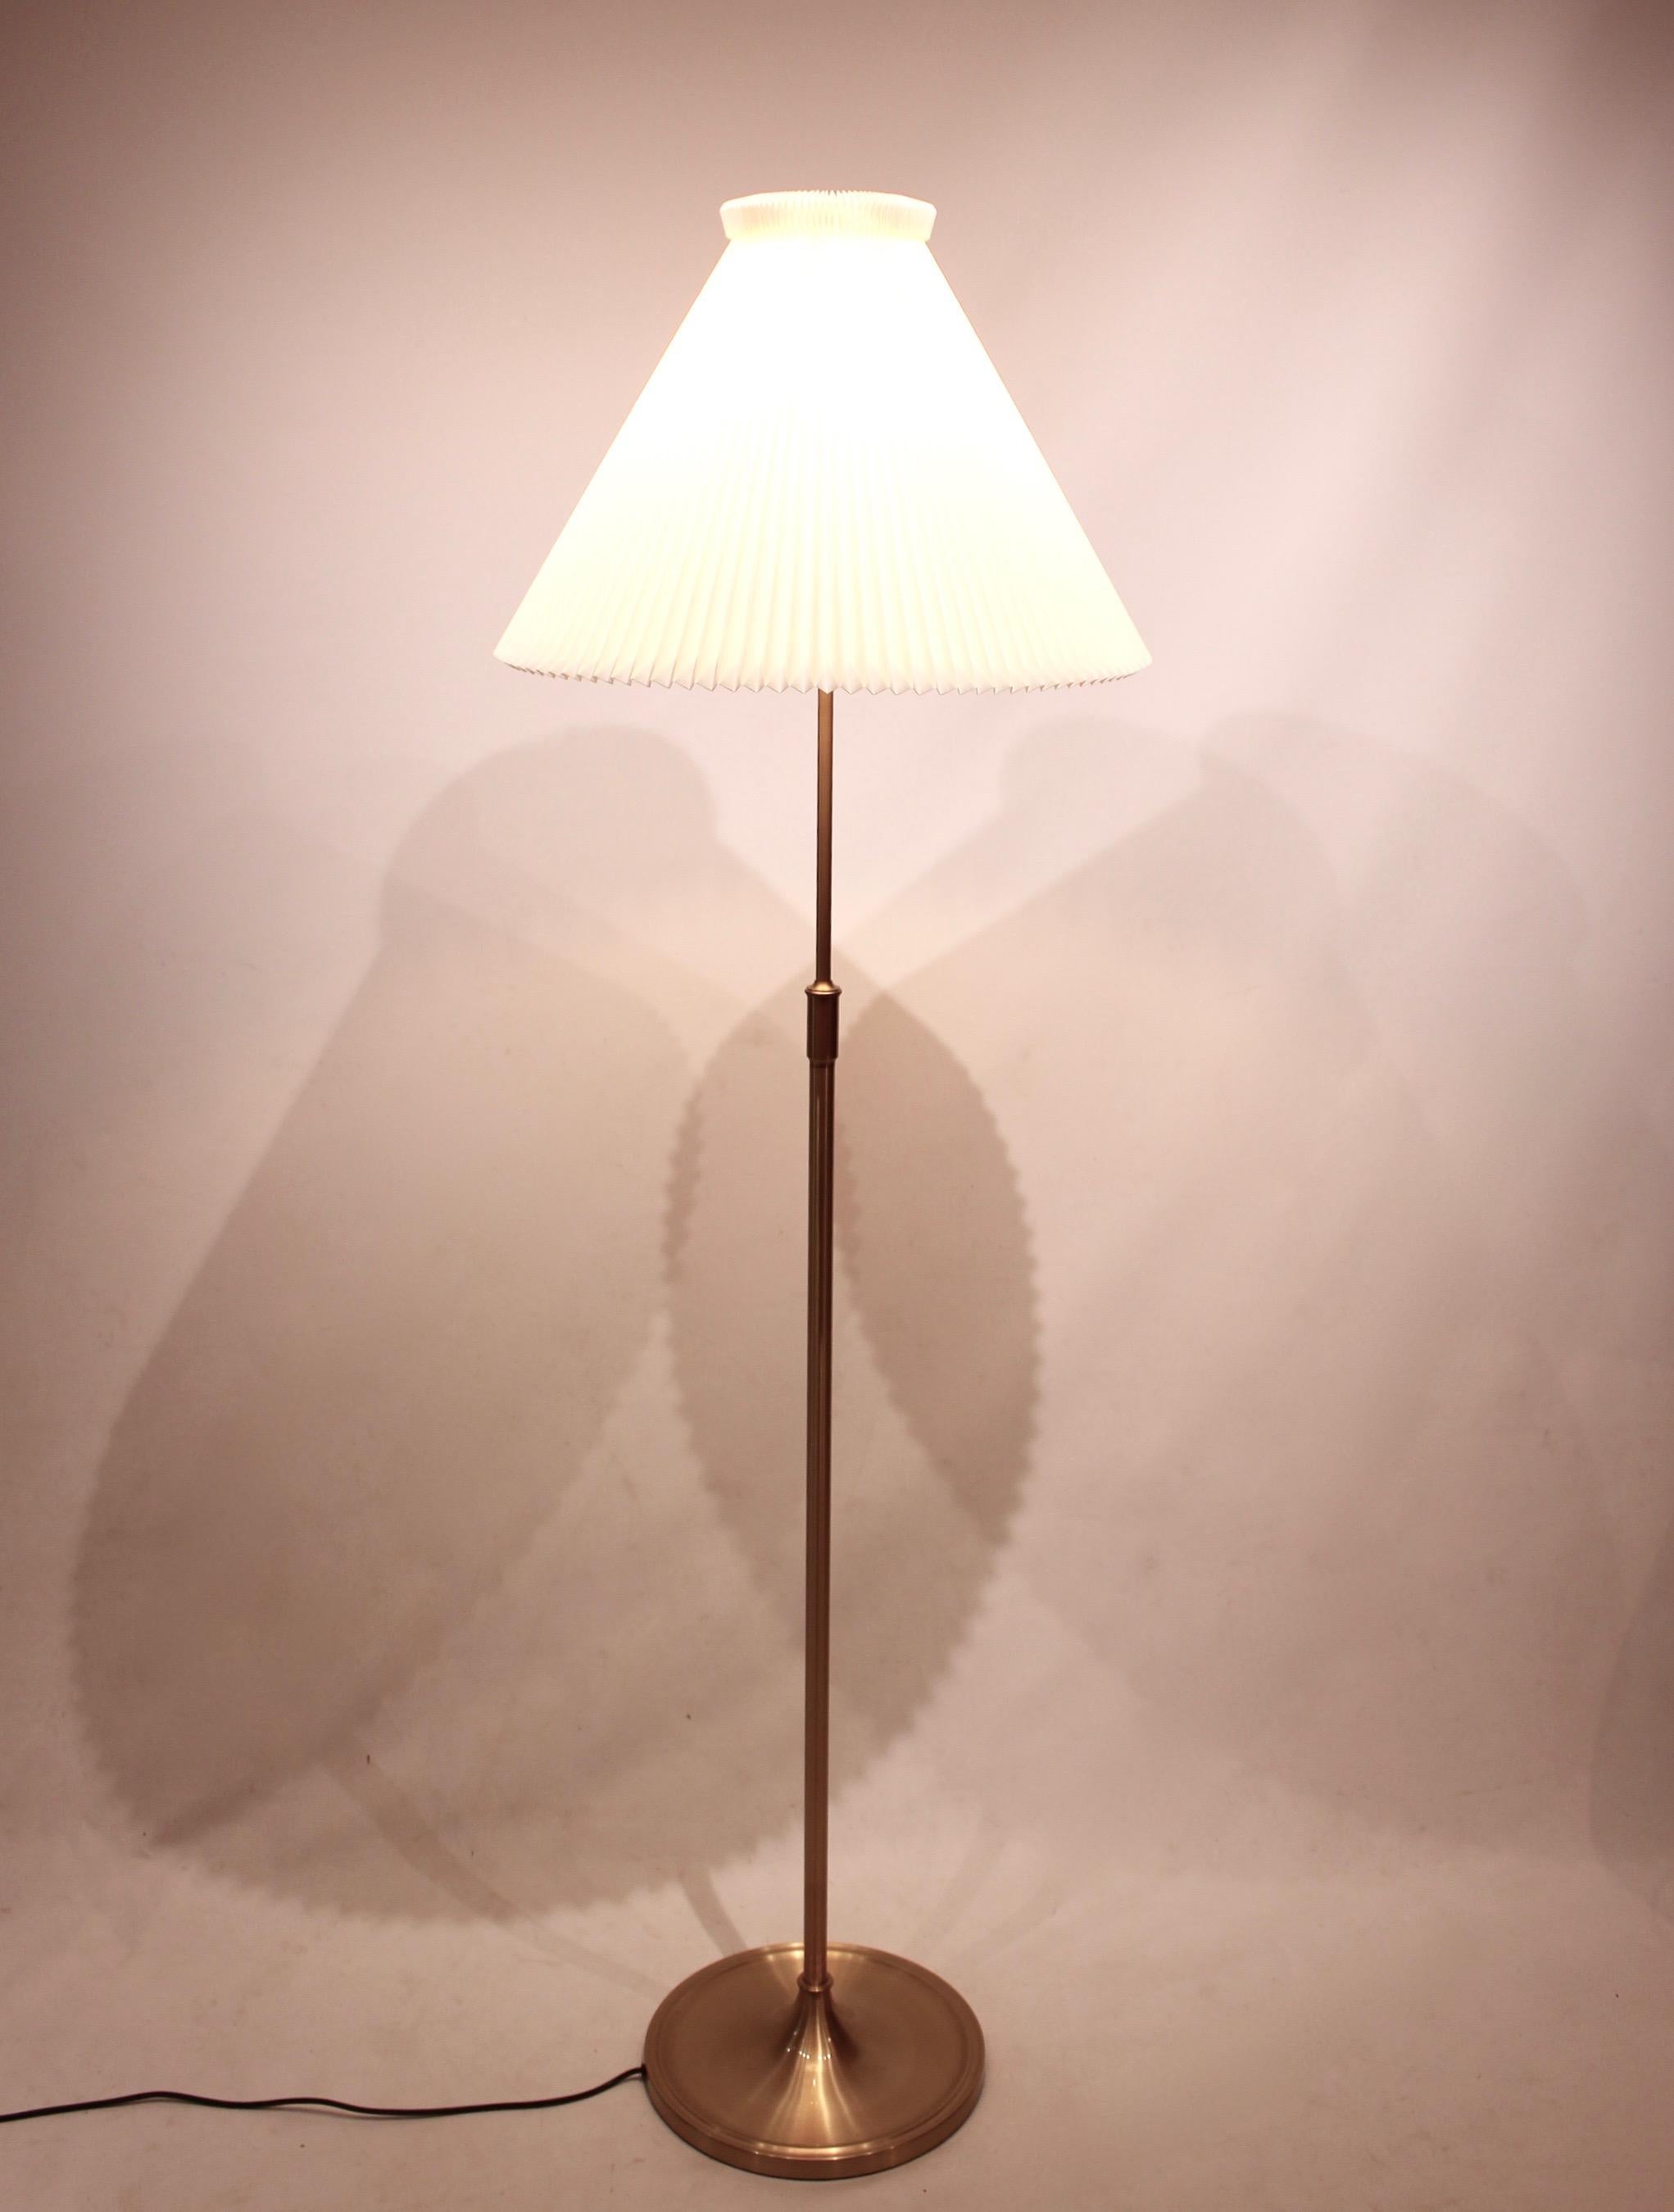 Scandinavian Modern Floor Lamp, Model 339, Designed by Aage Petersen for Le Klint. 